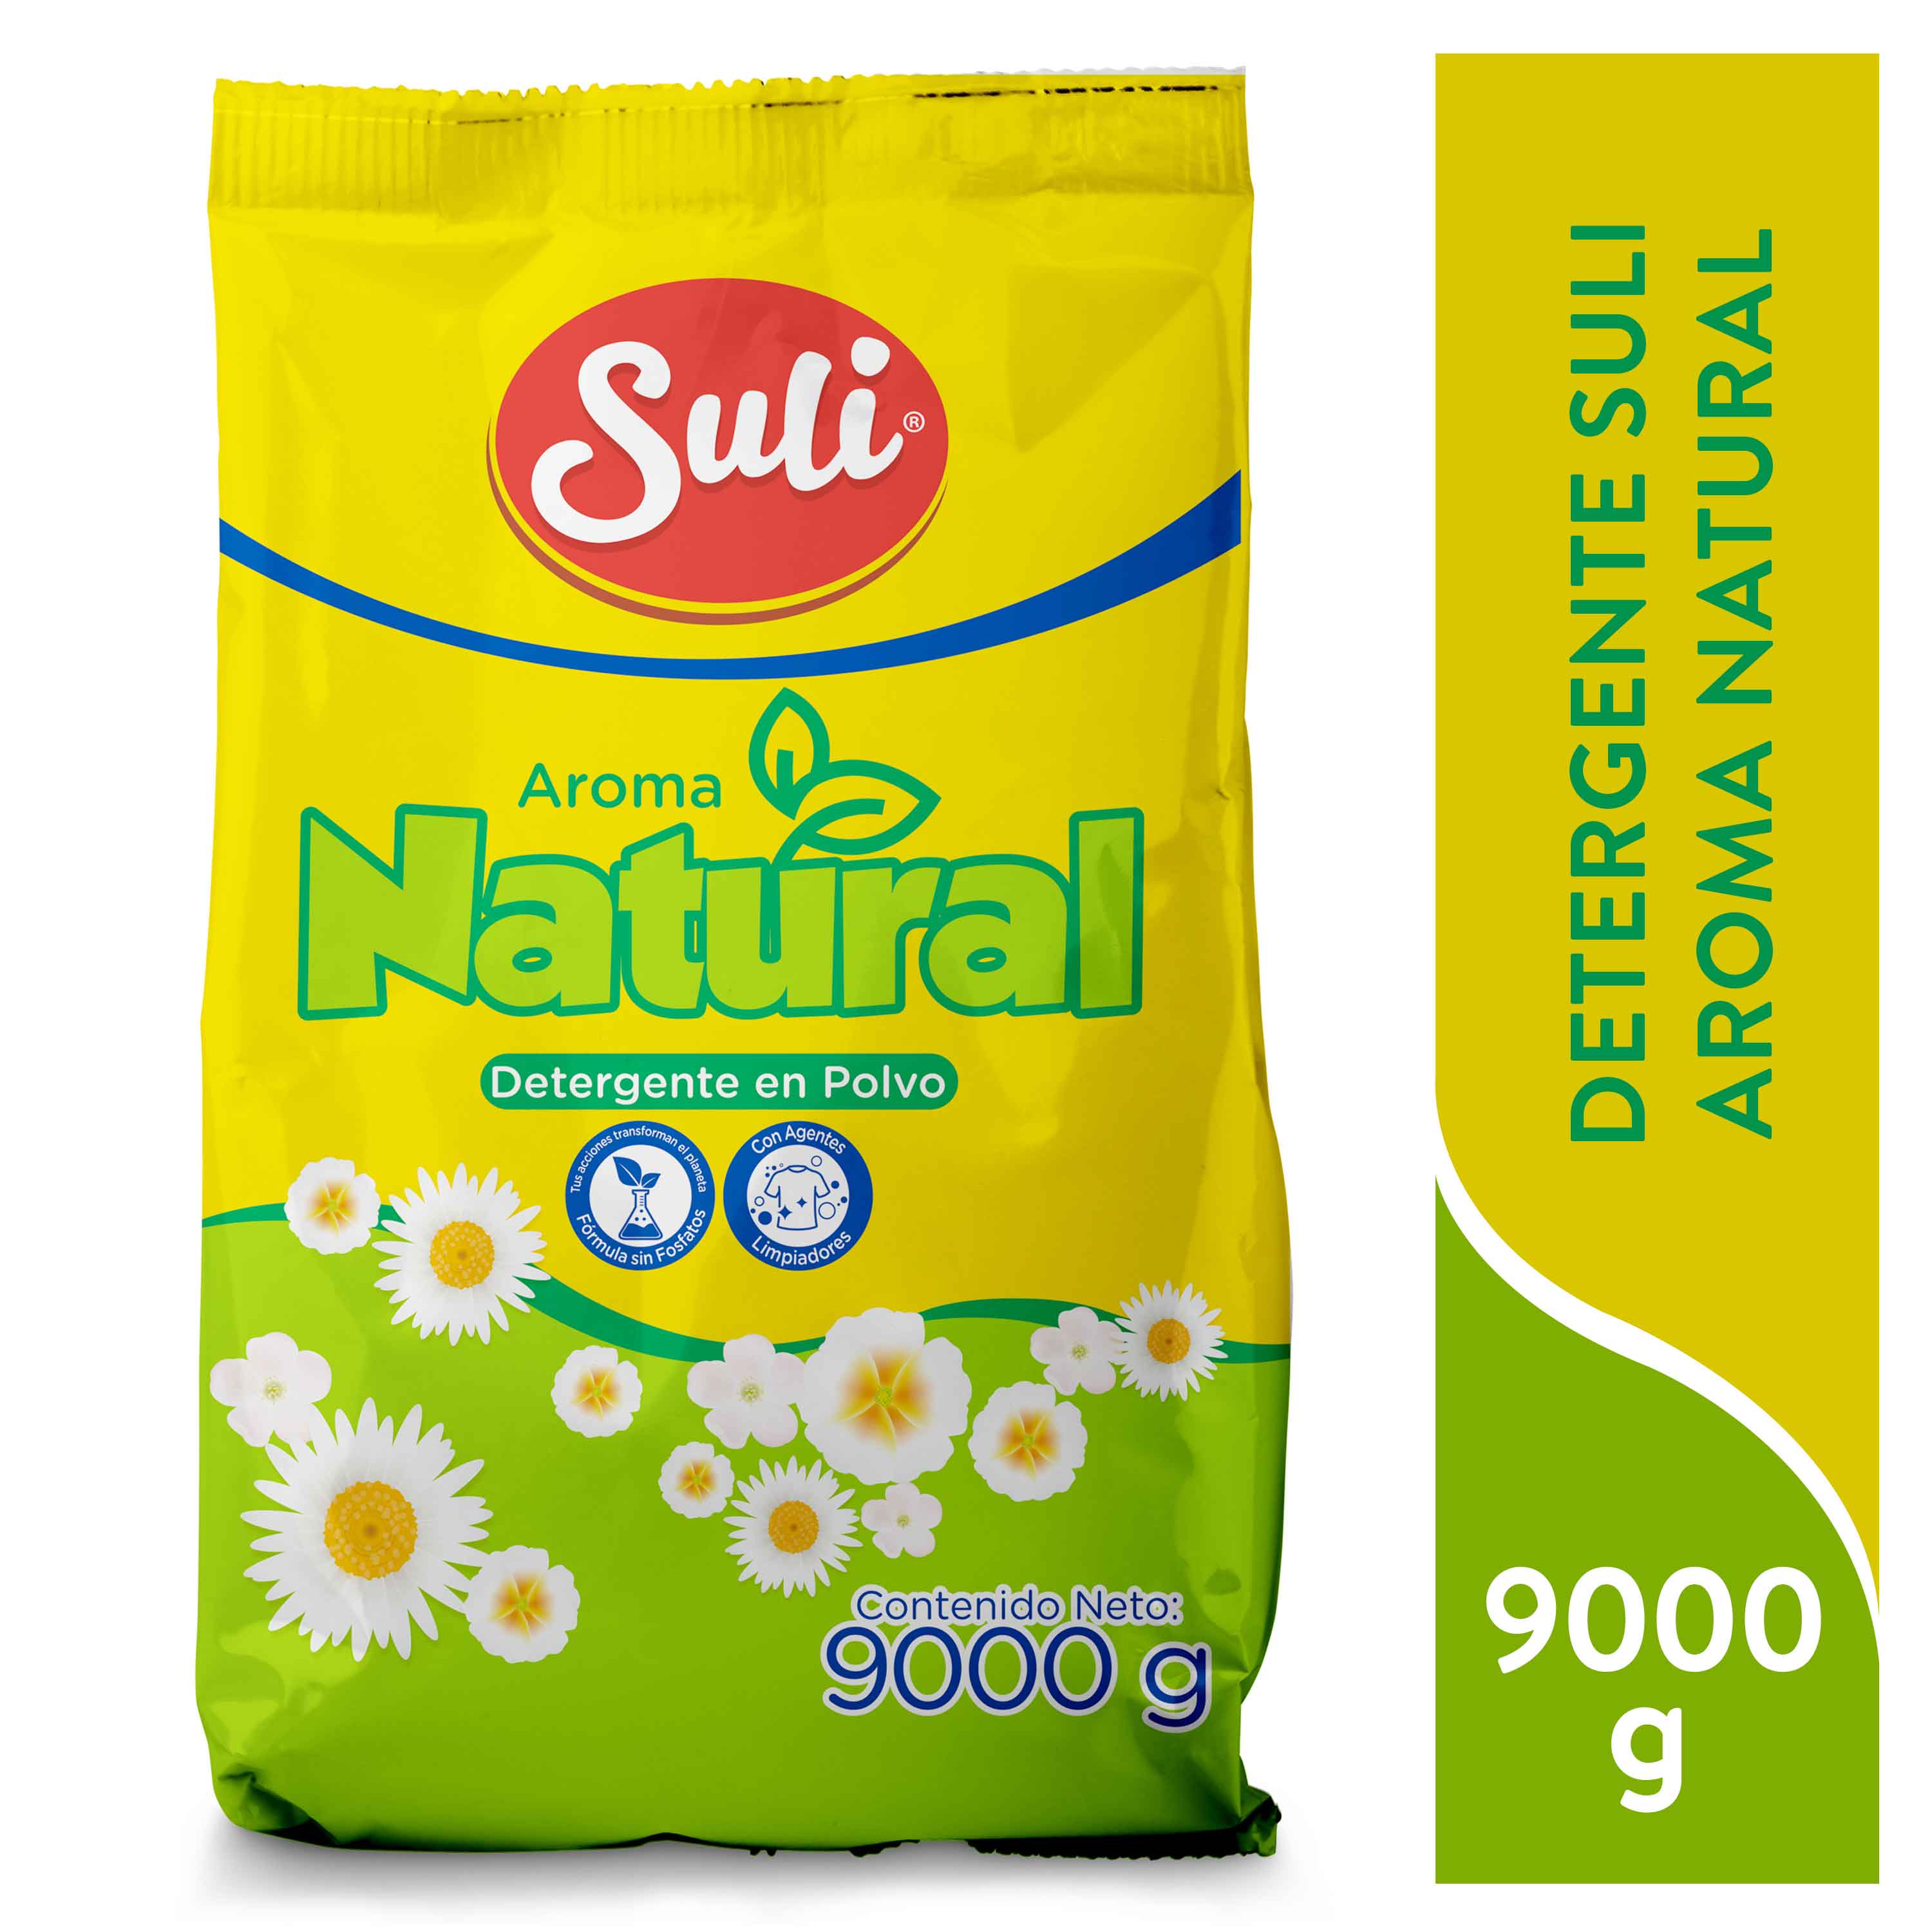 Detergente-Suli-Aroma-Natural-9000gr-1-8270